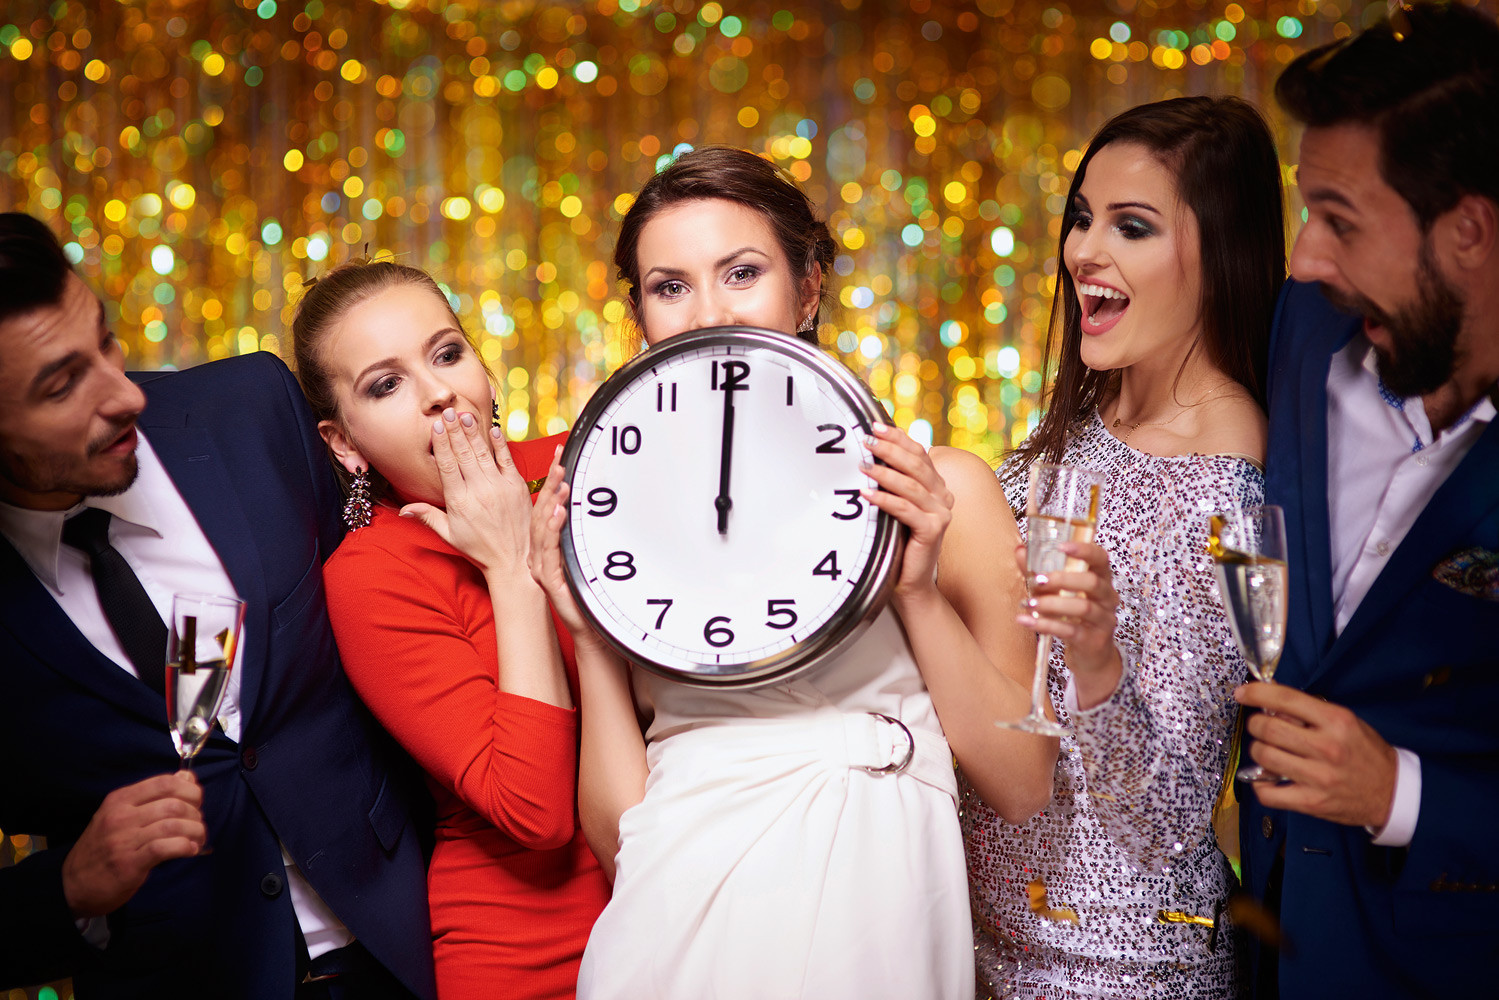 Сценарии новогодней вечеринки: 5 самых веселых вариантов